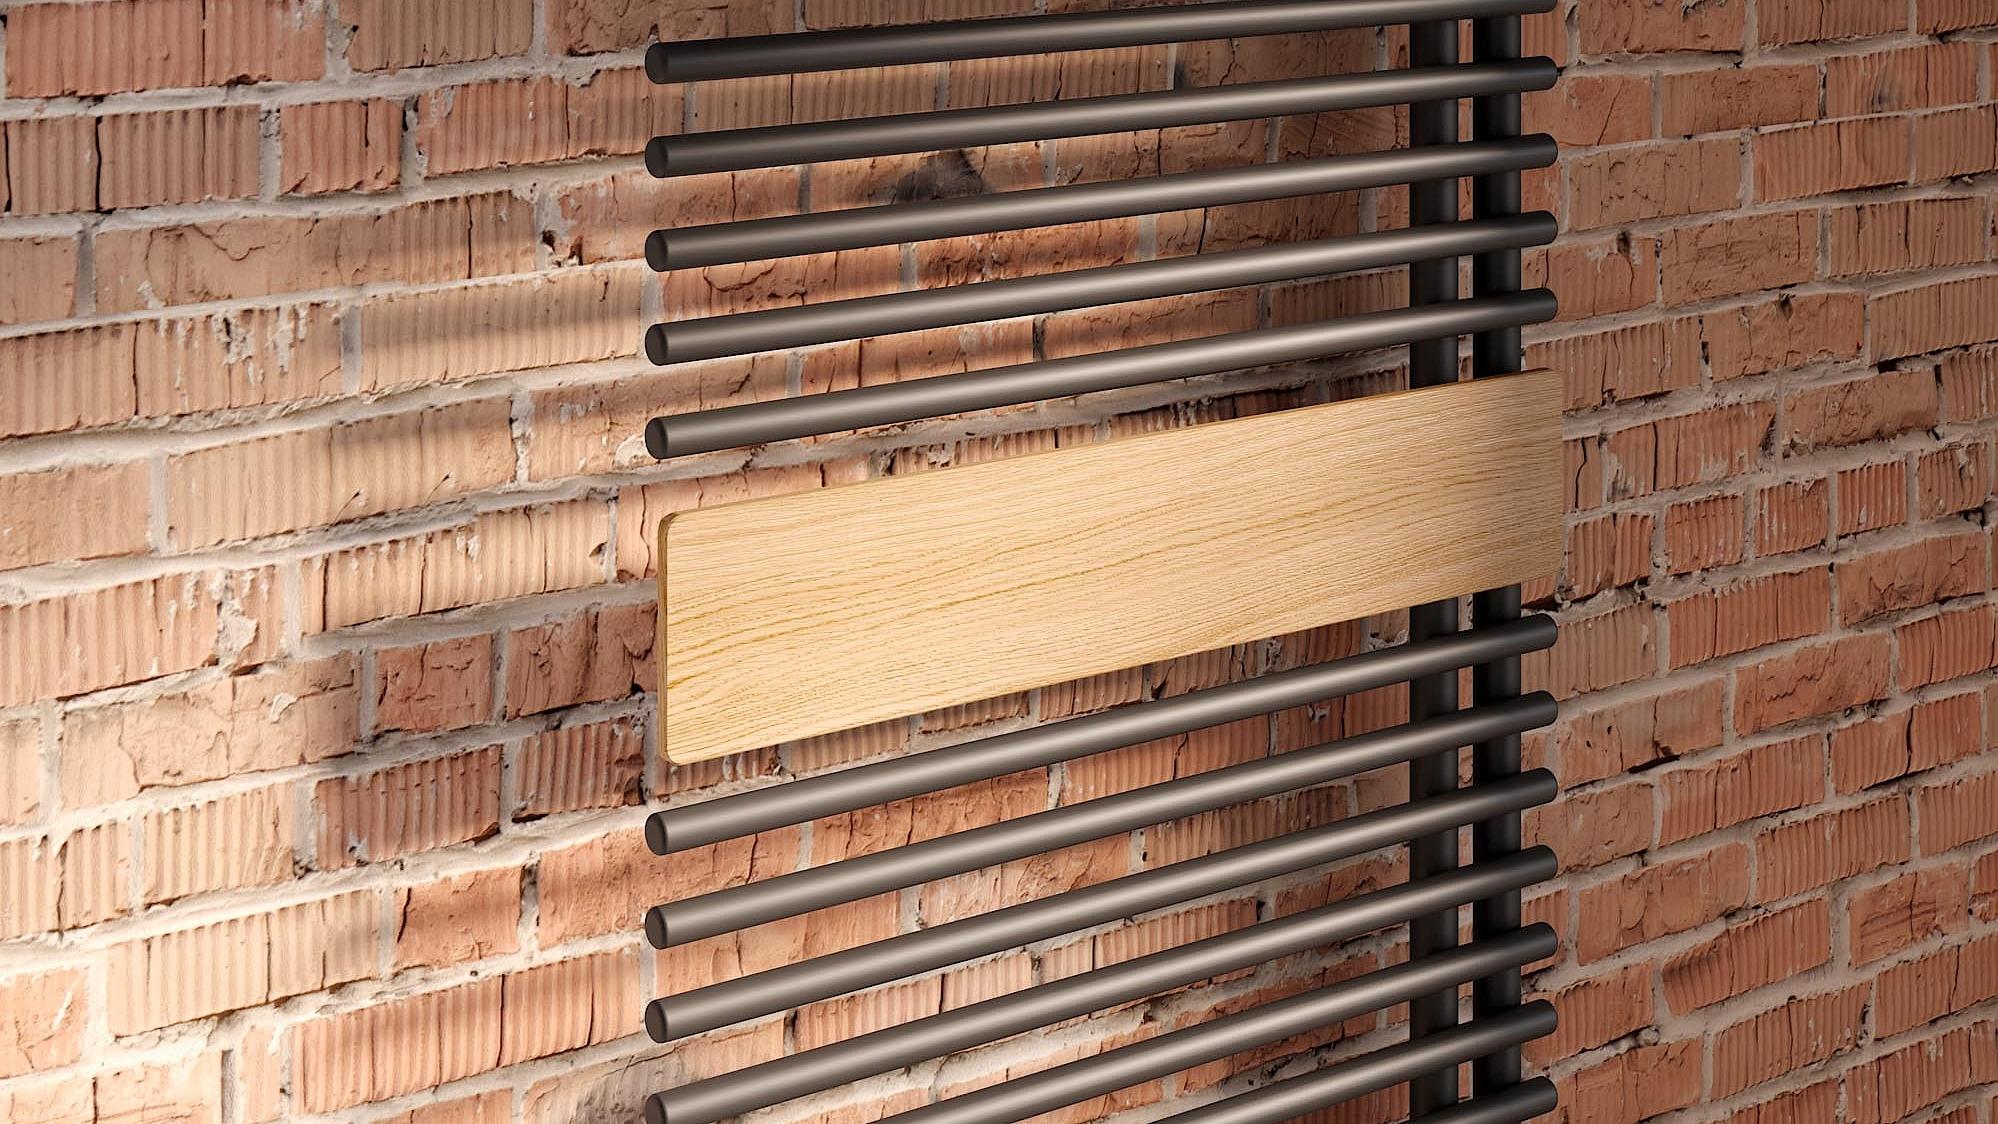 Kermi Credo-Half round dizaino radiatoriaus – rankšluosčių džiovintuvo – dizaino elementas yra ir iš natūralaus medžio, šviesaus ąžuolo.